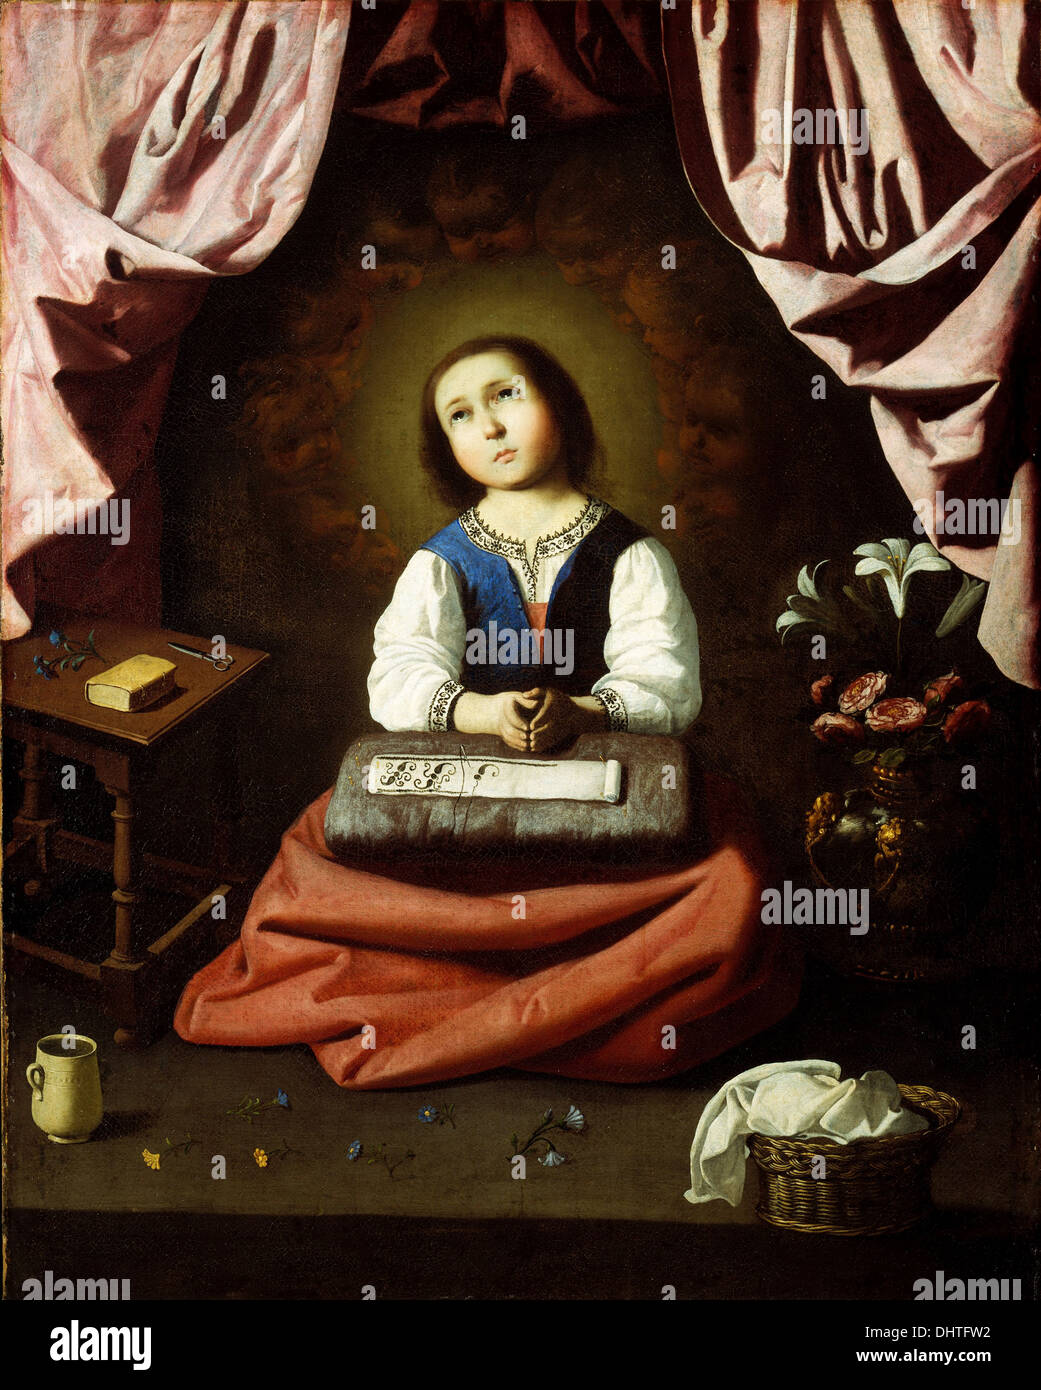 The Young Virgin - by Francisco de Zurbarán, 1633 Stock Photo